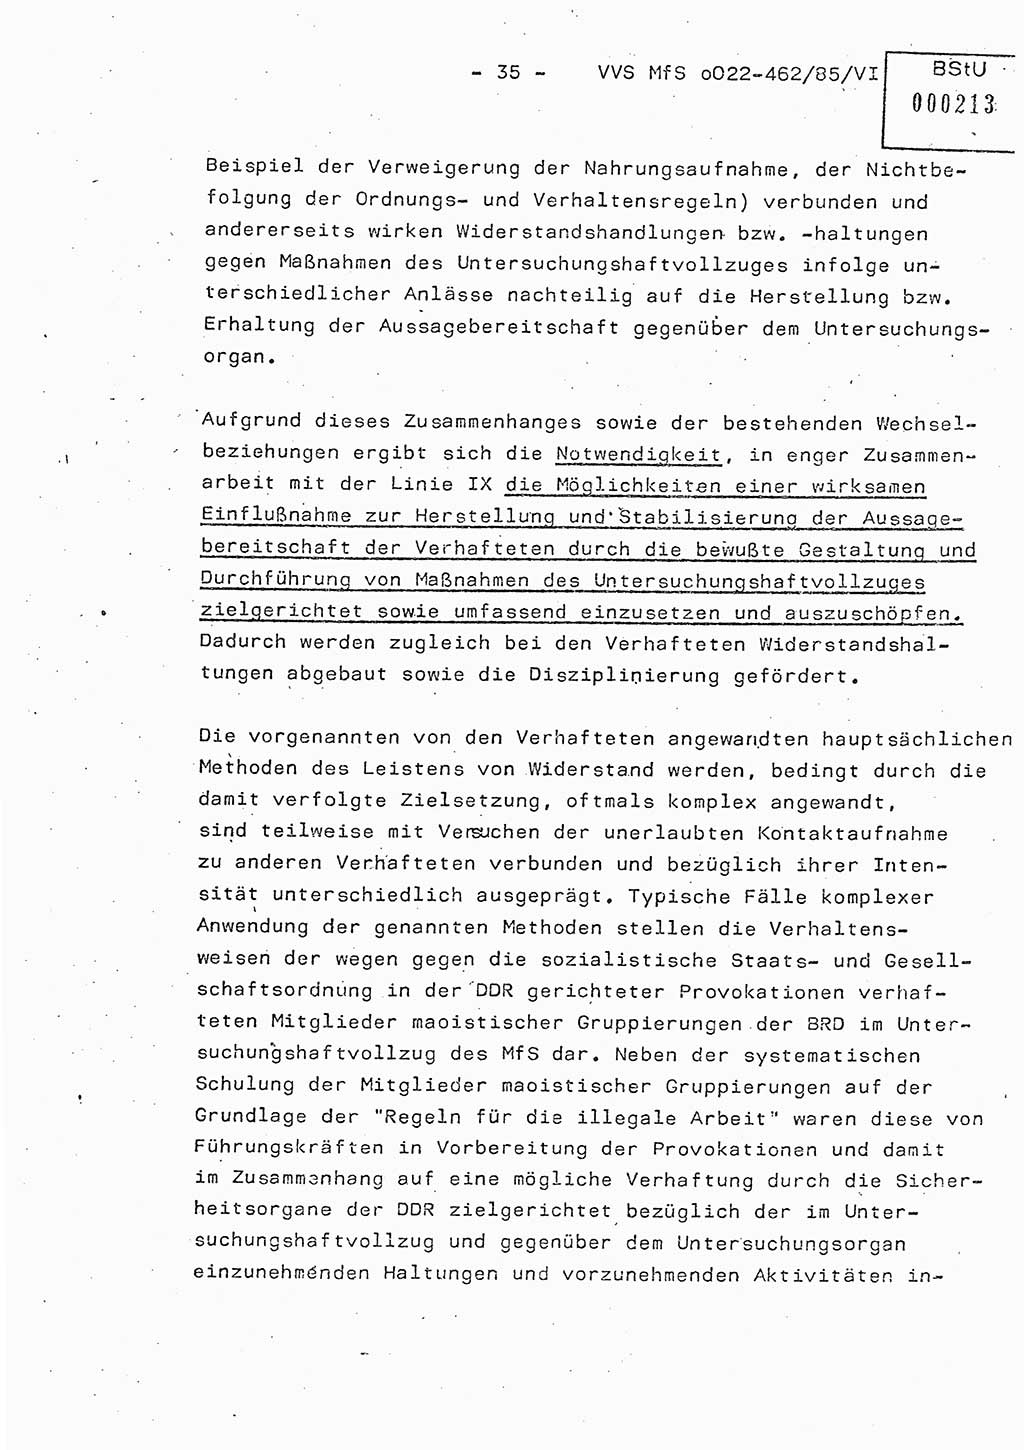 Der Untersuchungshaftvollzug im MfS, Schulungsmaterial Teil Ⅵ, Ministerium für Staatssicherheit [Deutsche Demokratische Republik (DDR)], Abteilung (Abt.) ⅩⅣ, Vertrauliche Verschlußsache (VVS) o022-462/85/Ⅵ, Berlin 1985, Seite 35 (Sch.-Mat. Ⅵ MfS DDR Abt. ⅩⅣ VVS o022-462/85/Ⅵ 1985, S. 35)